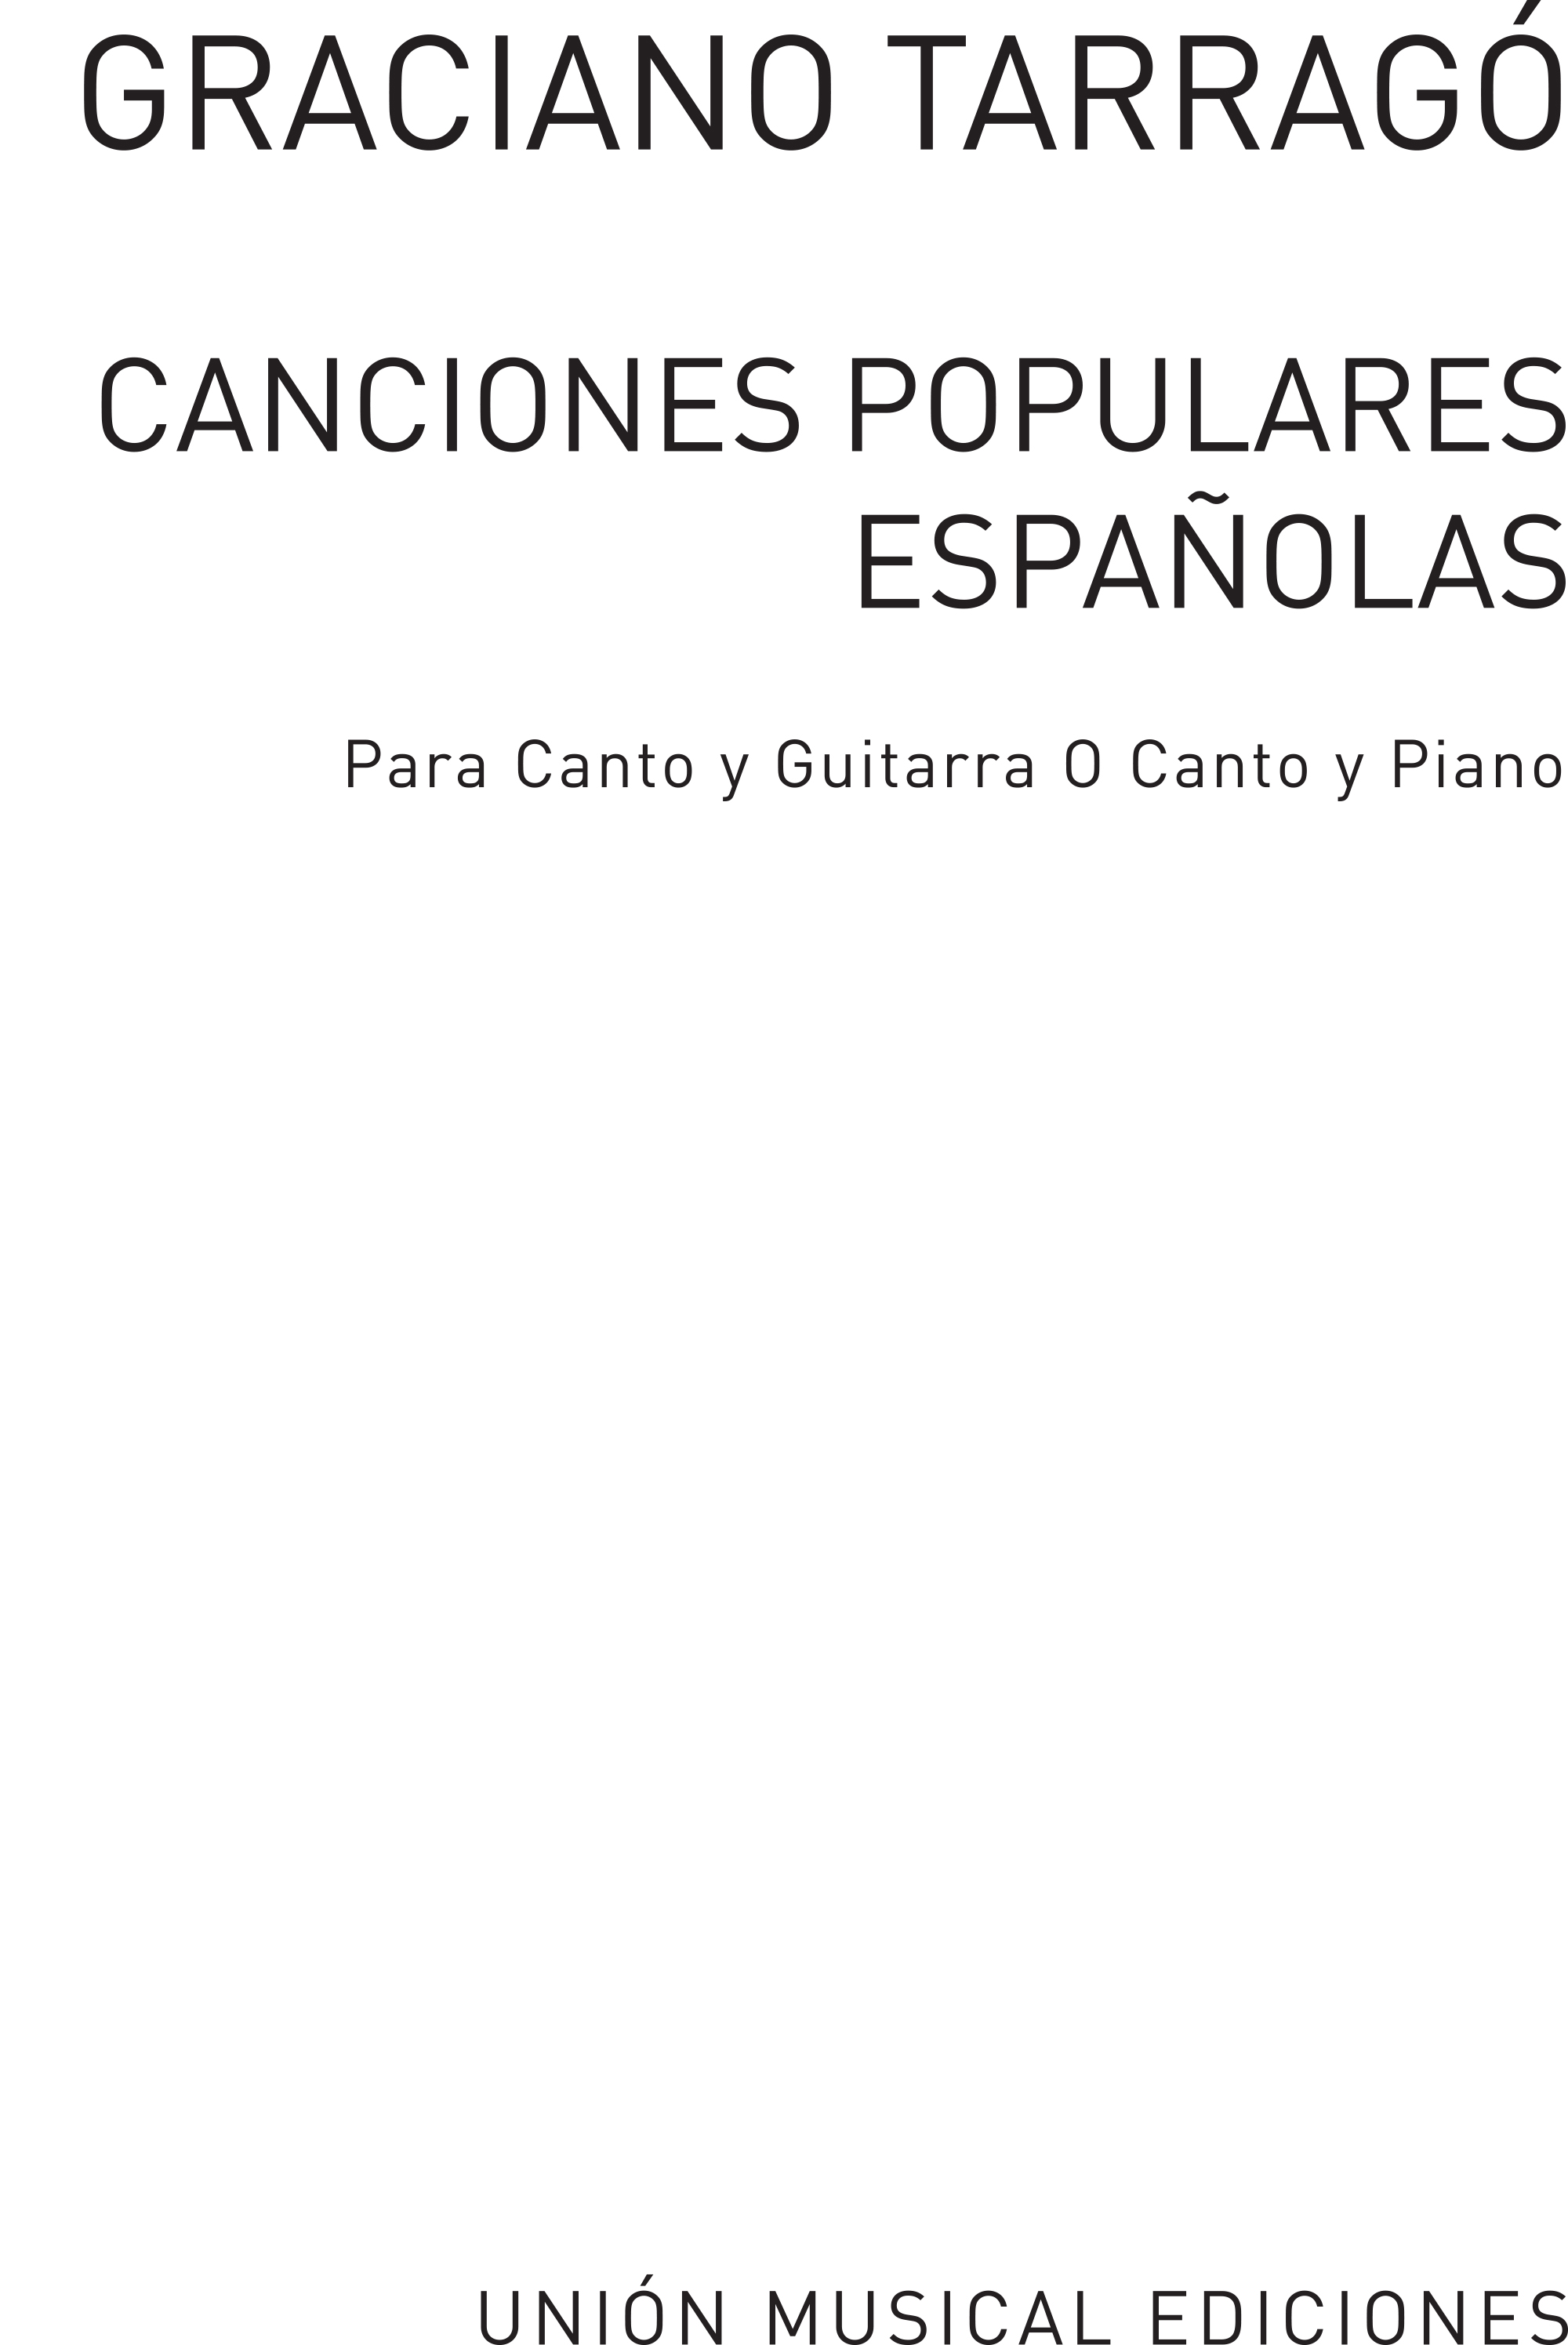 Graciano Tarragó: Canciones Populares Espanolas Volume 1: Voice: Artist Songbook